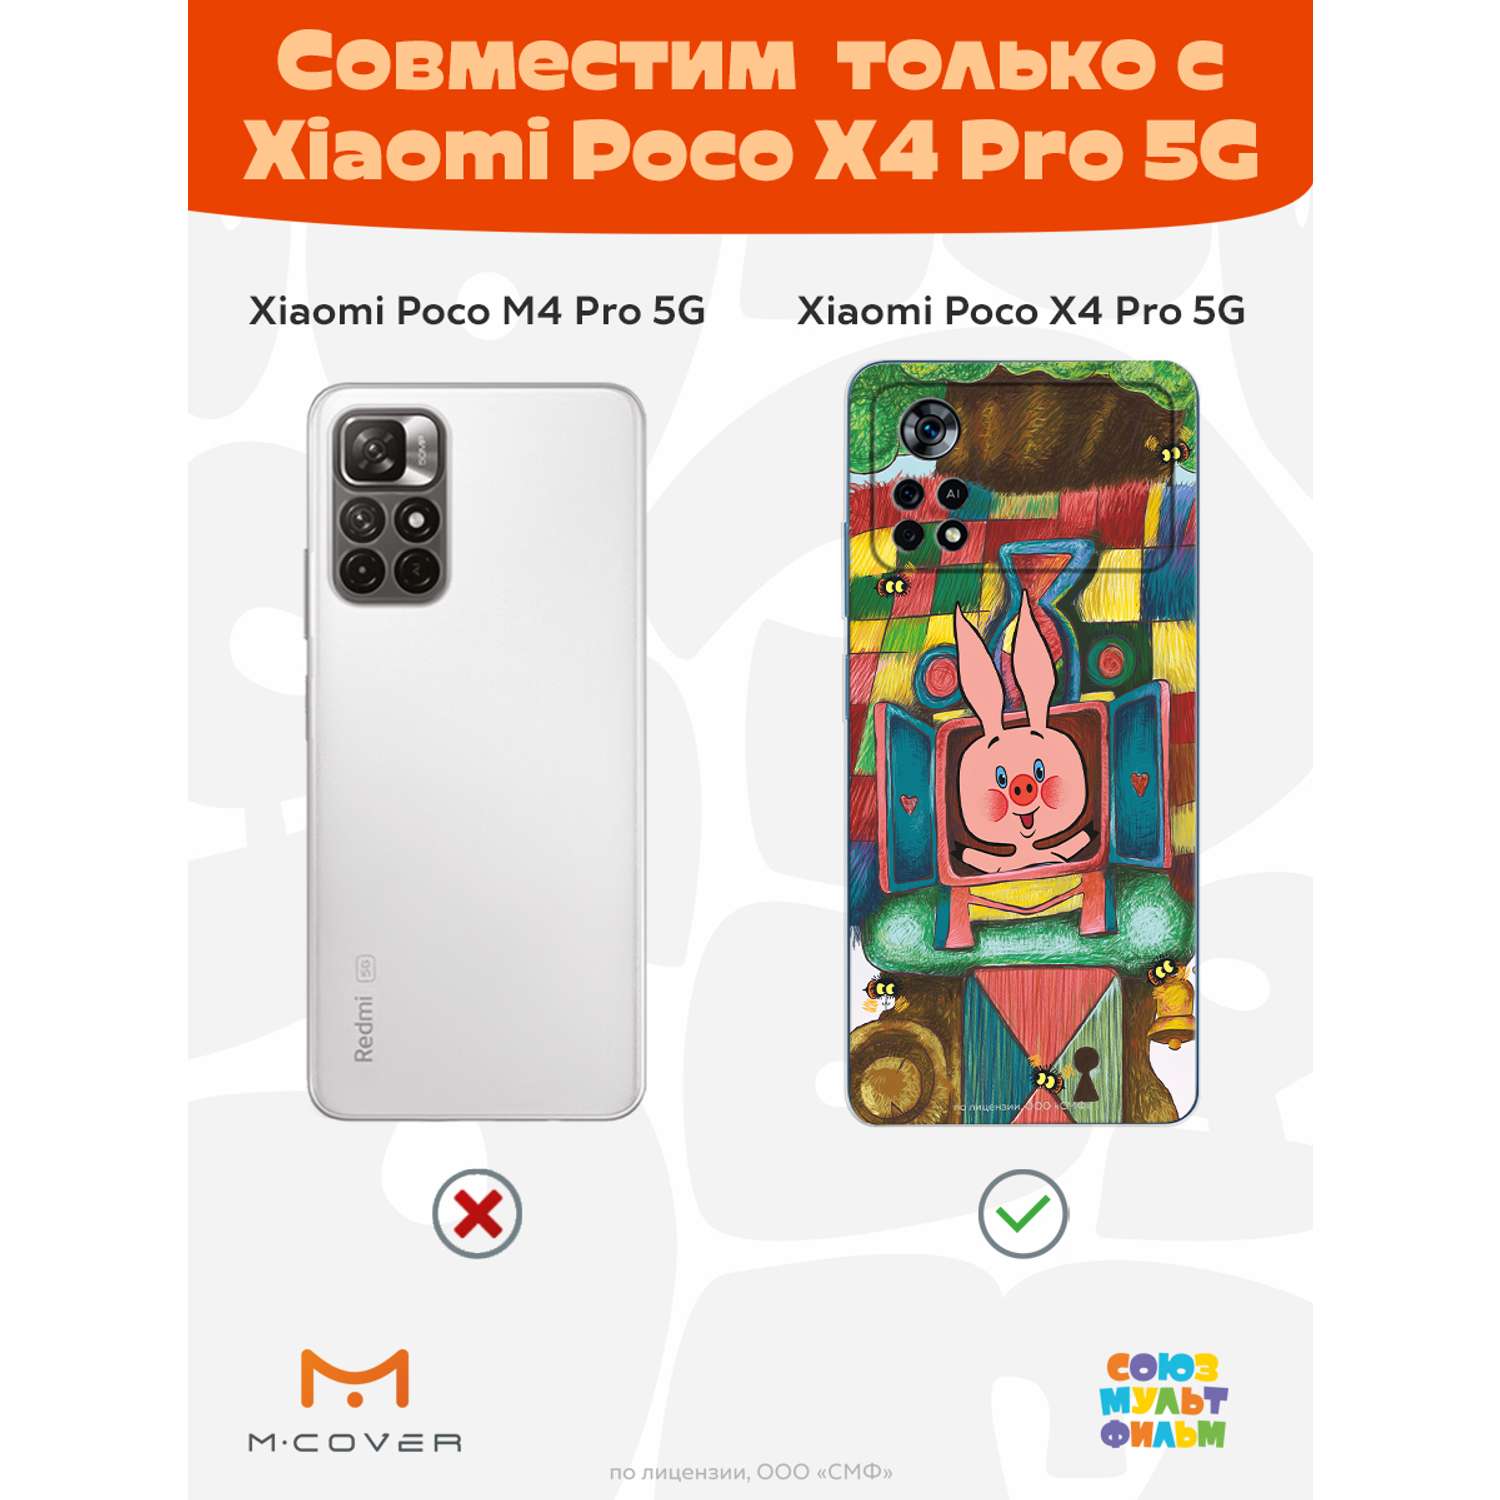 Силиконовый чехол Mcover для смартфона Xiaomi Poco X4 Pro 5g Союзмультфильм Довольный Пятачок - фото 4